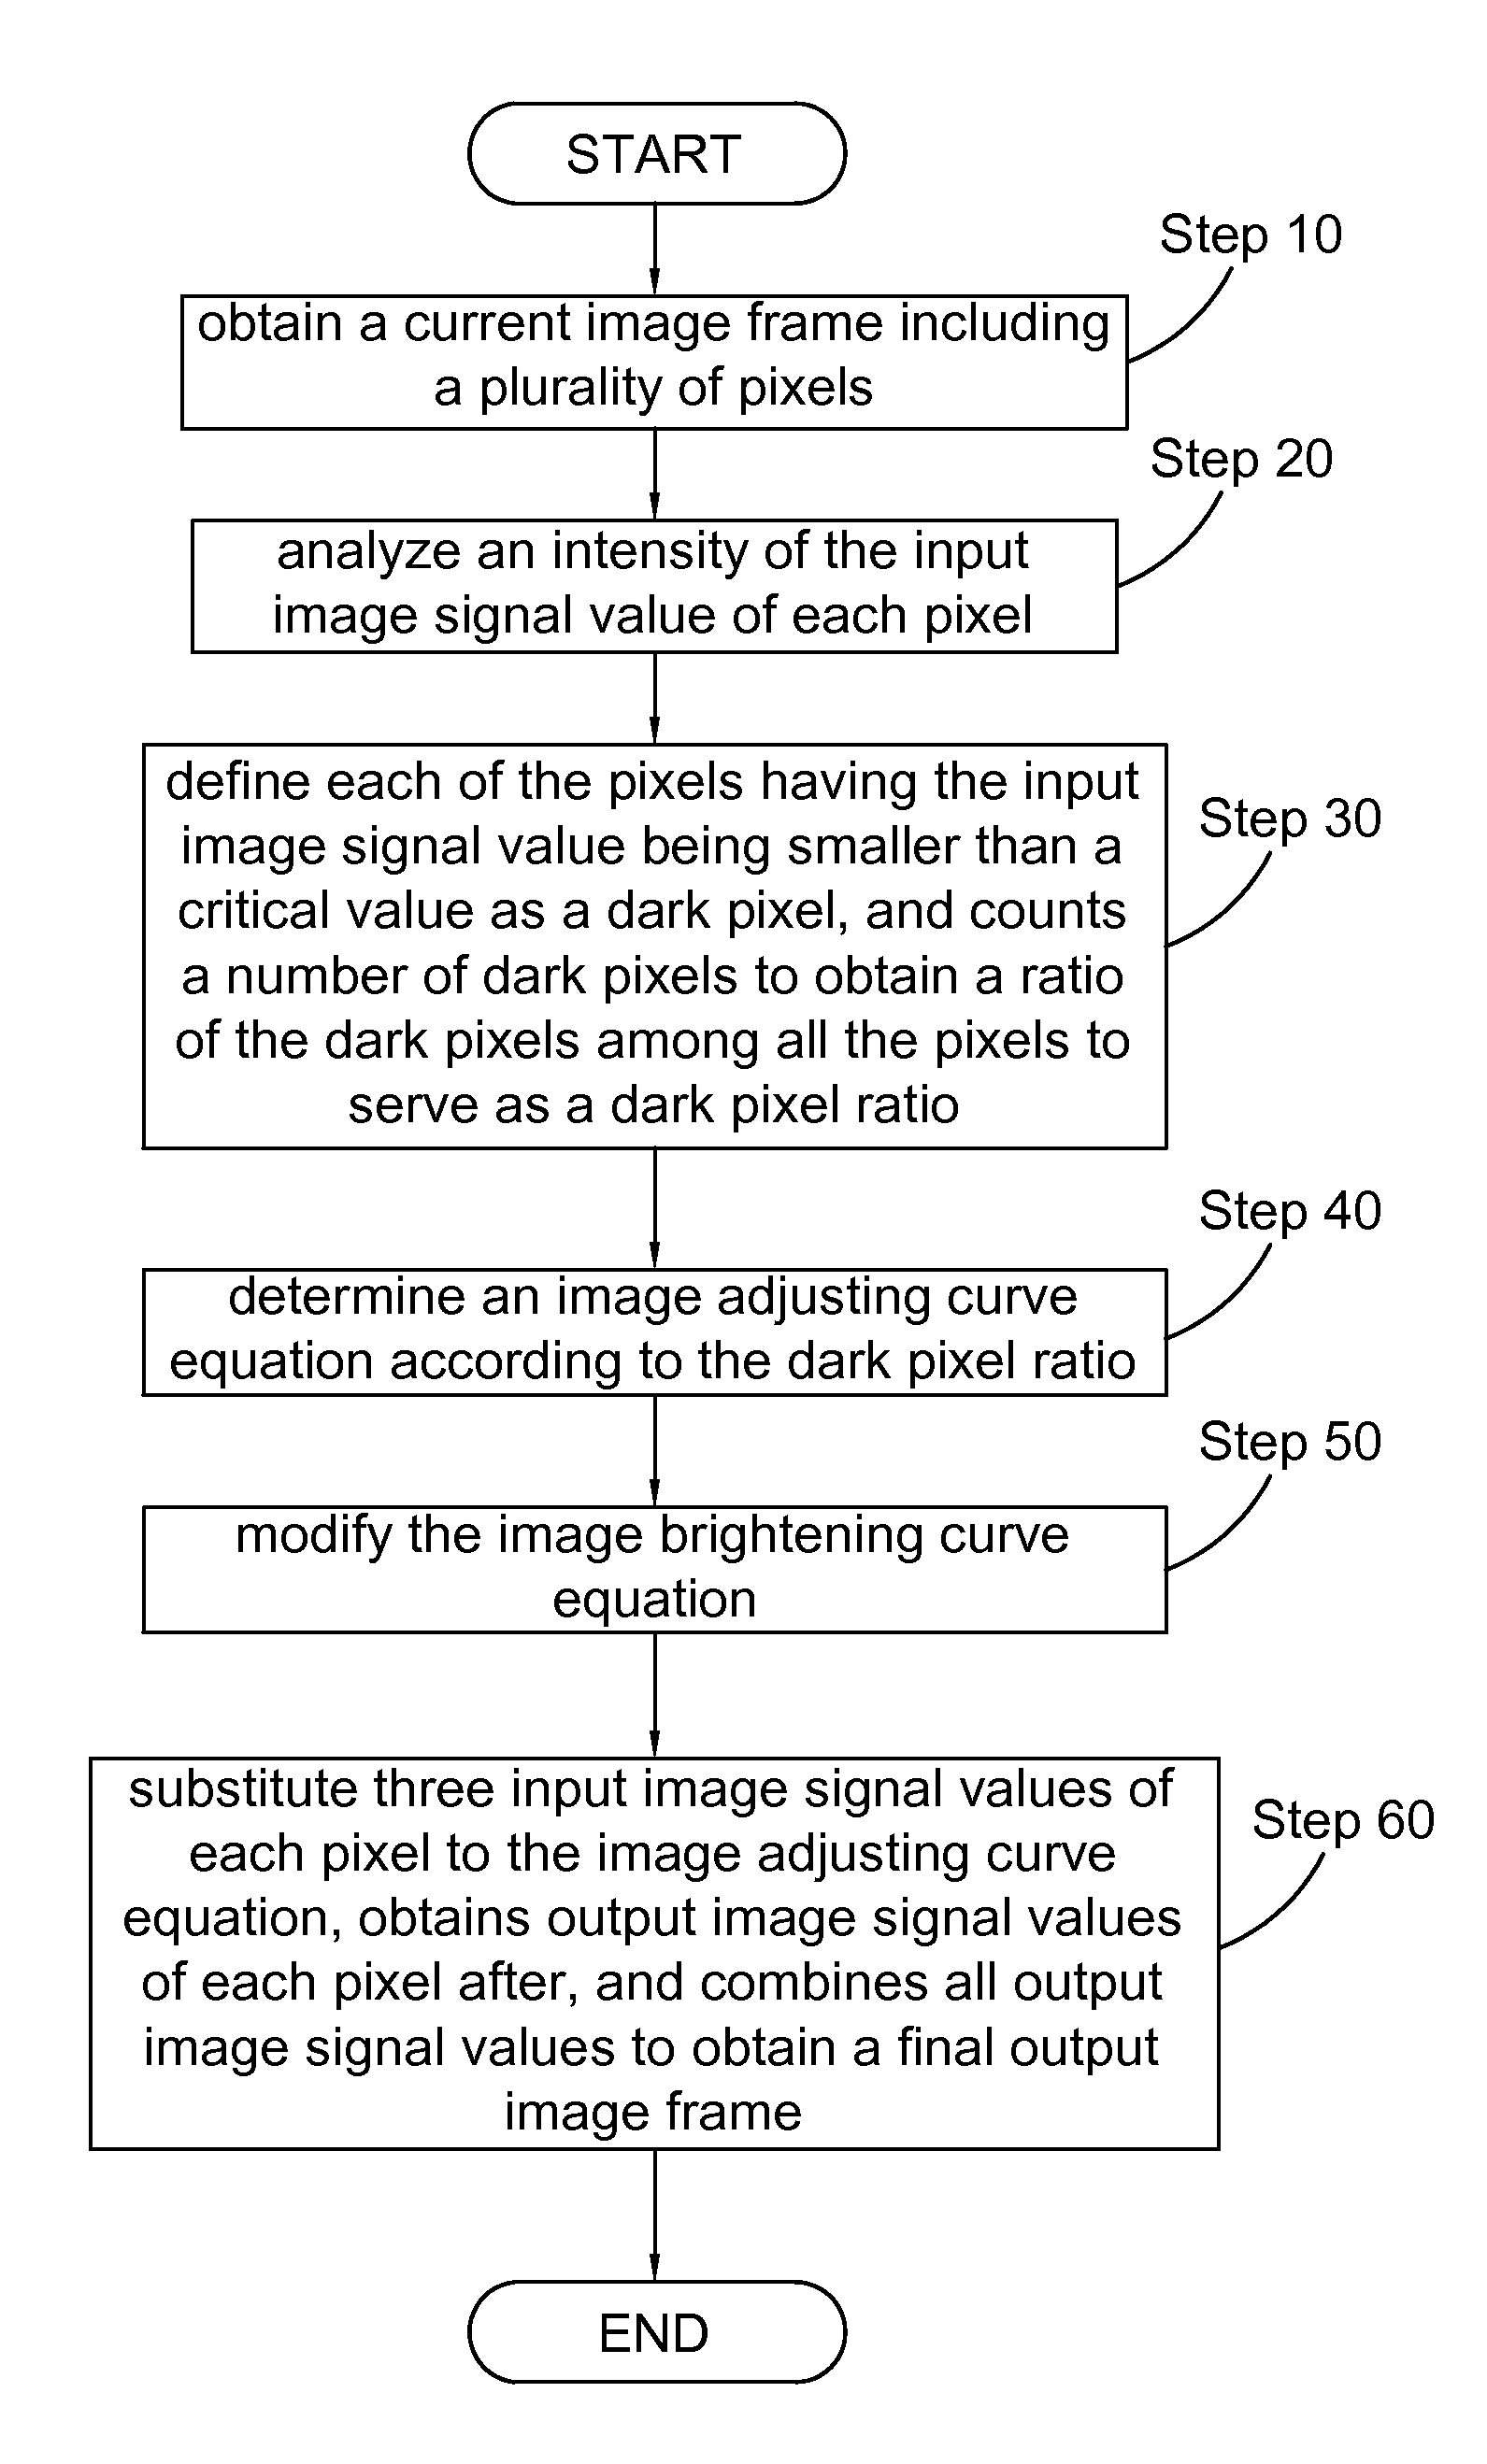 Method for adjusting image